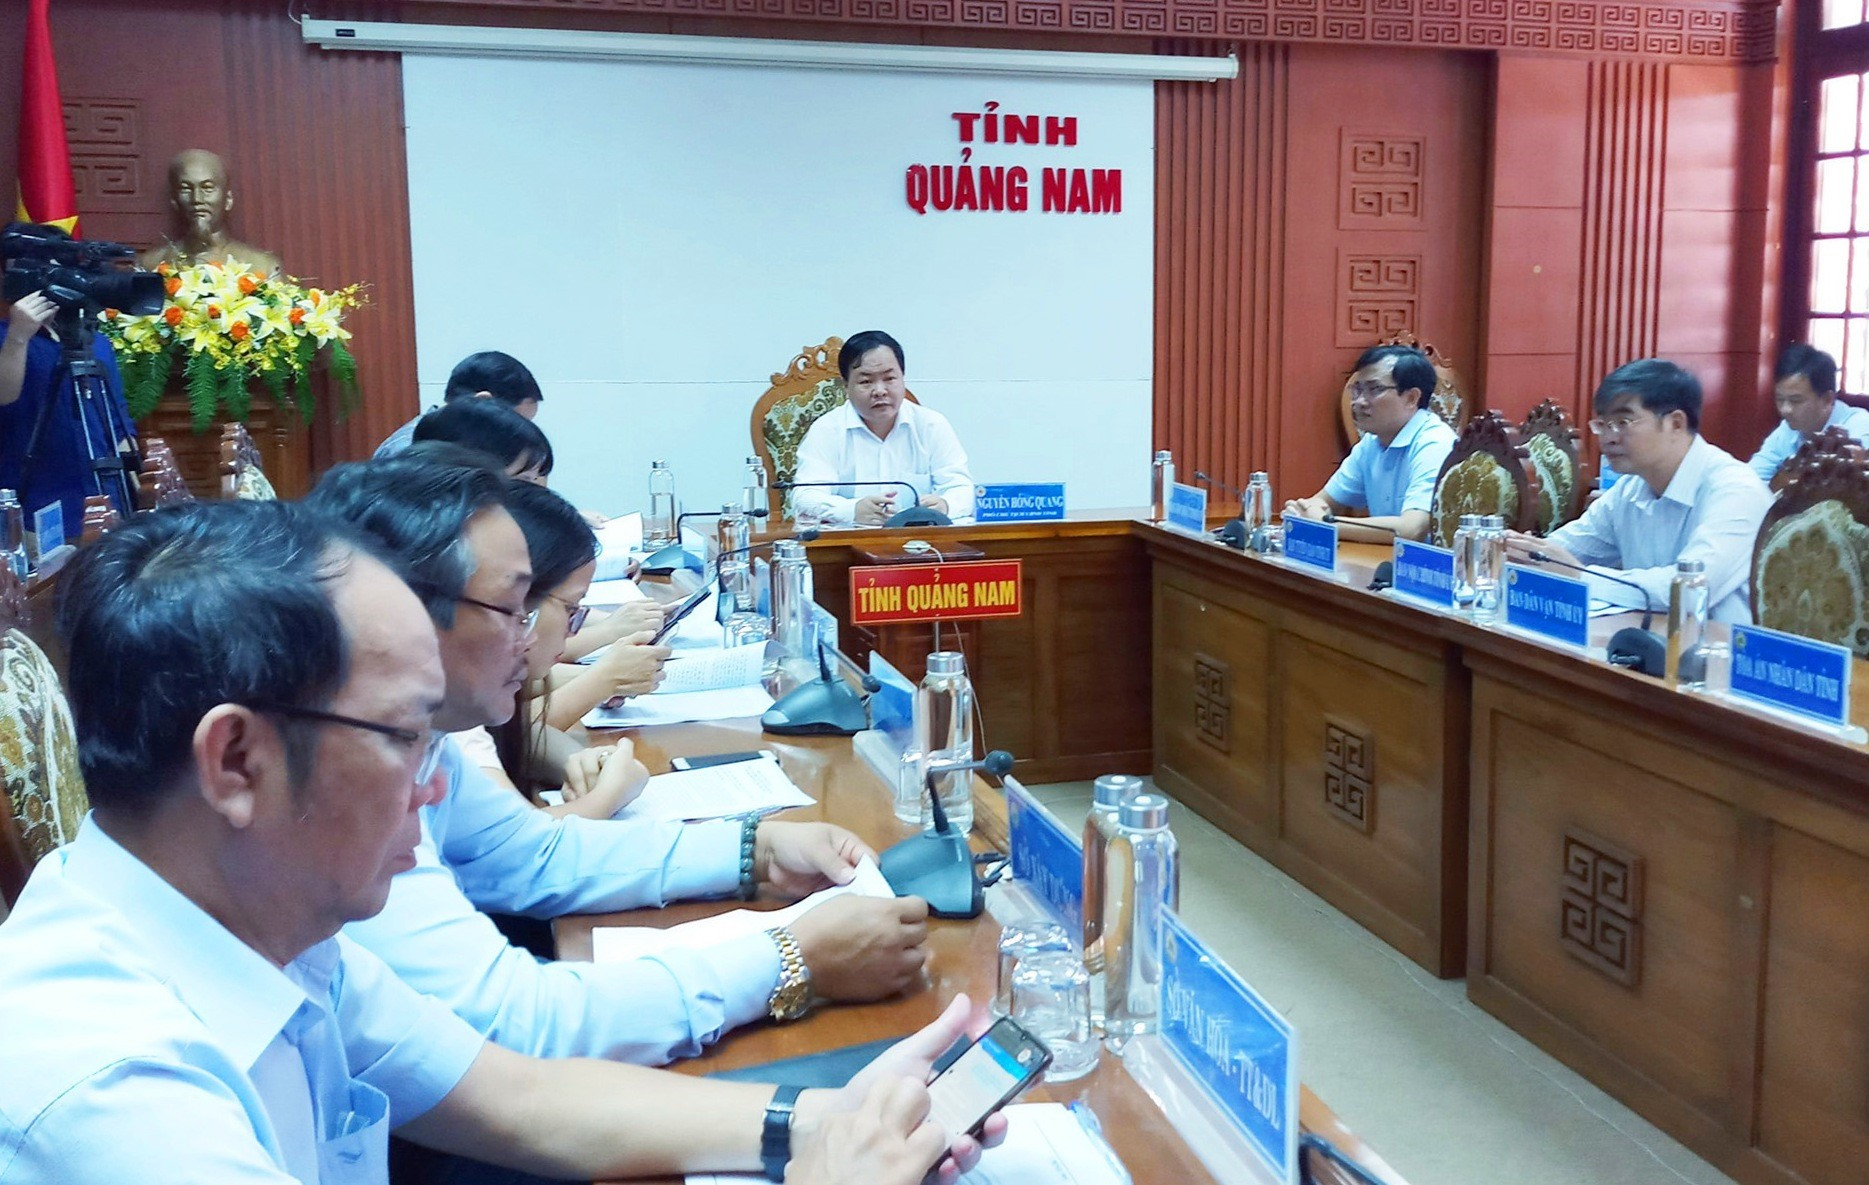 Phó Chủ tịch UBND tỉnh Nguyễn Hồng Quang chủ trì tại điểm cầu Quảng Nam. Ảnh: A.N